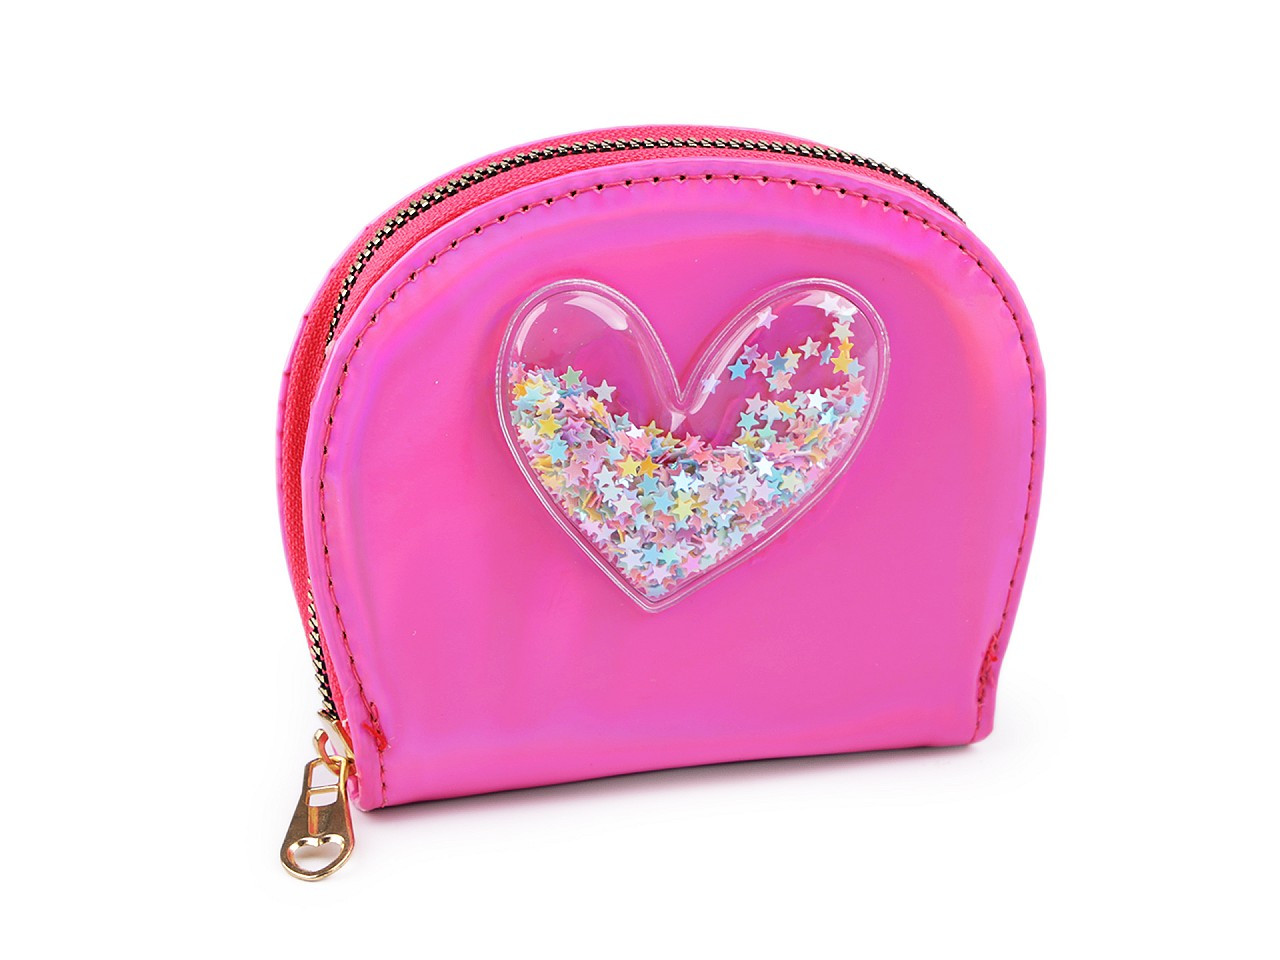 Dívčí peněženka srdce s přesýpacími flitry 10,5x13 cm, barva 2 růžová ostrá sv.